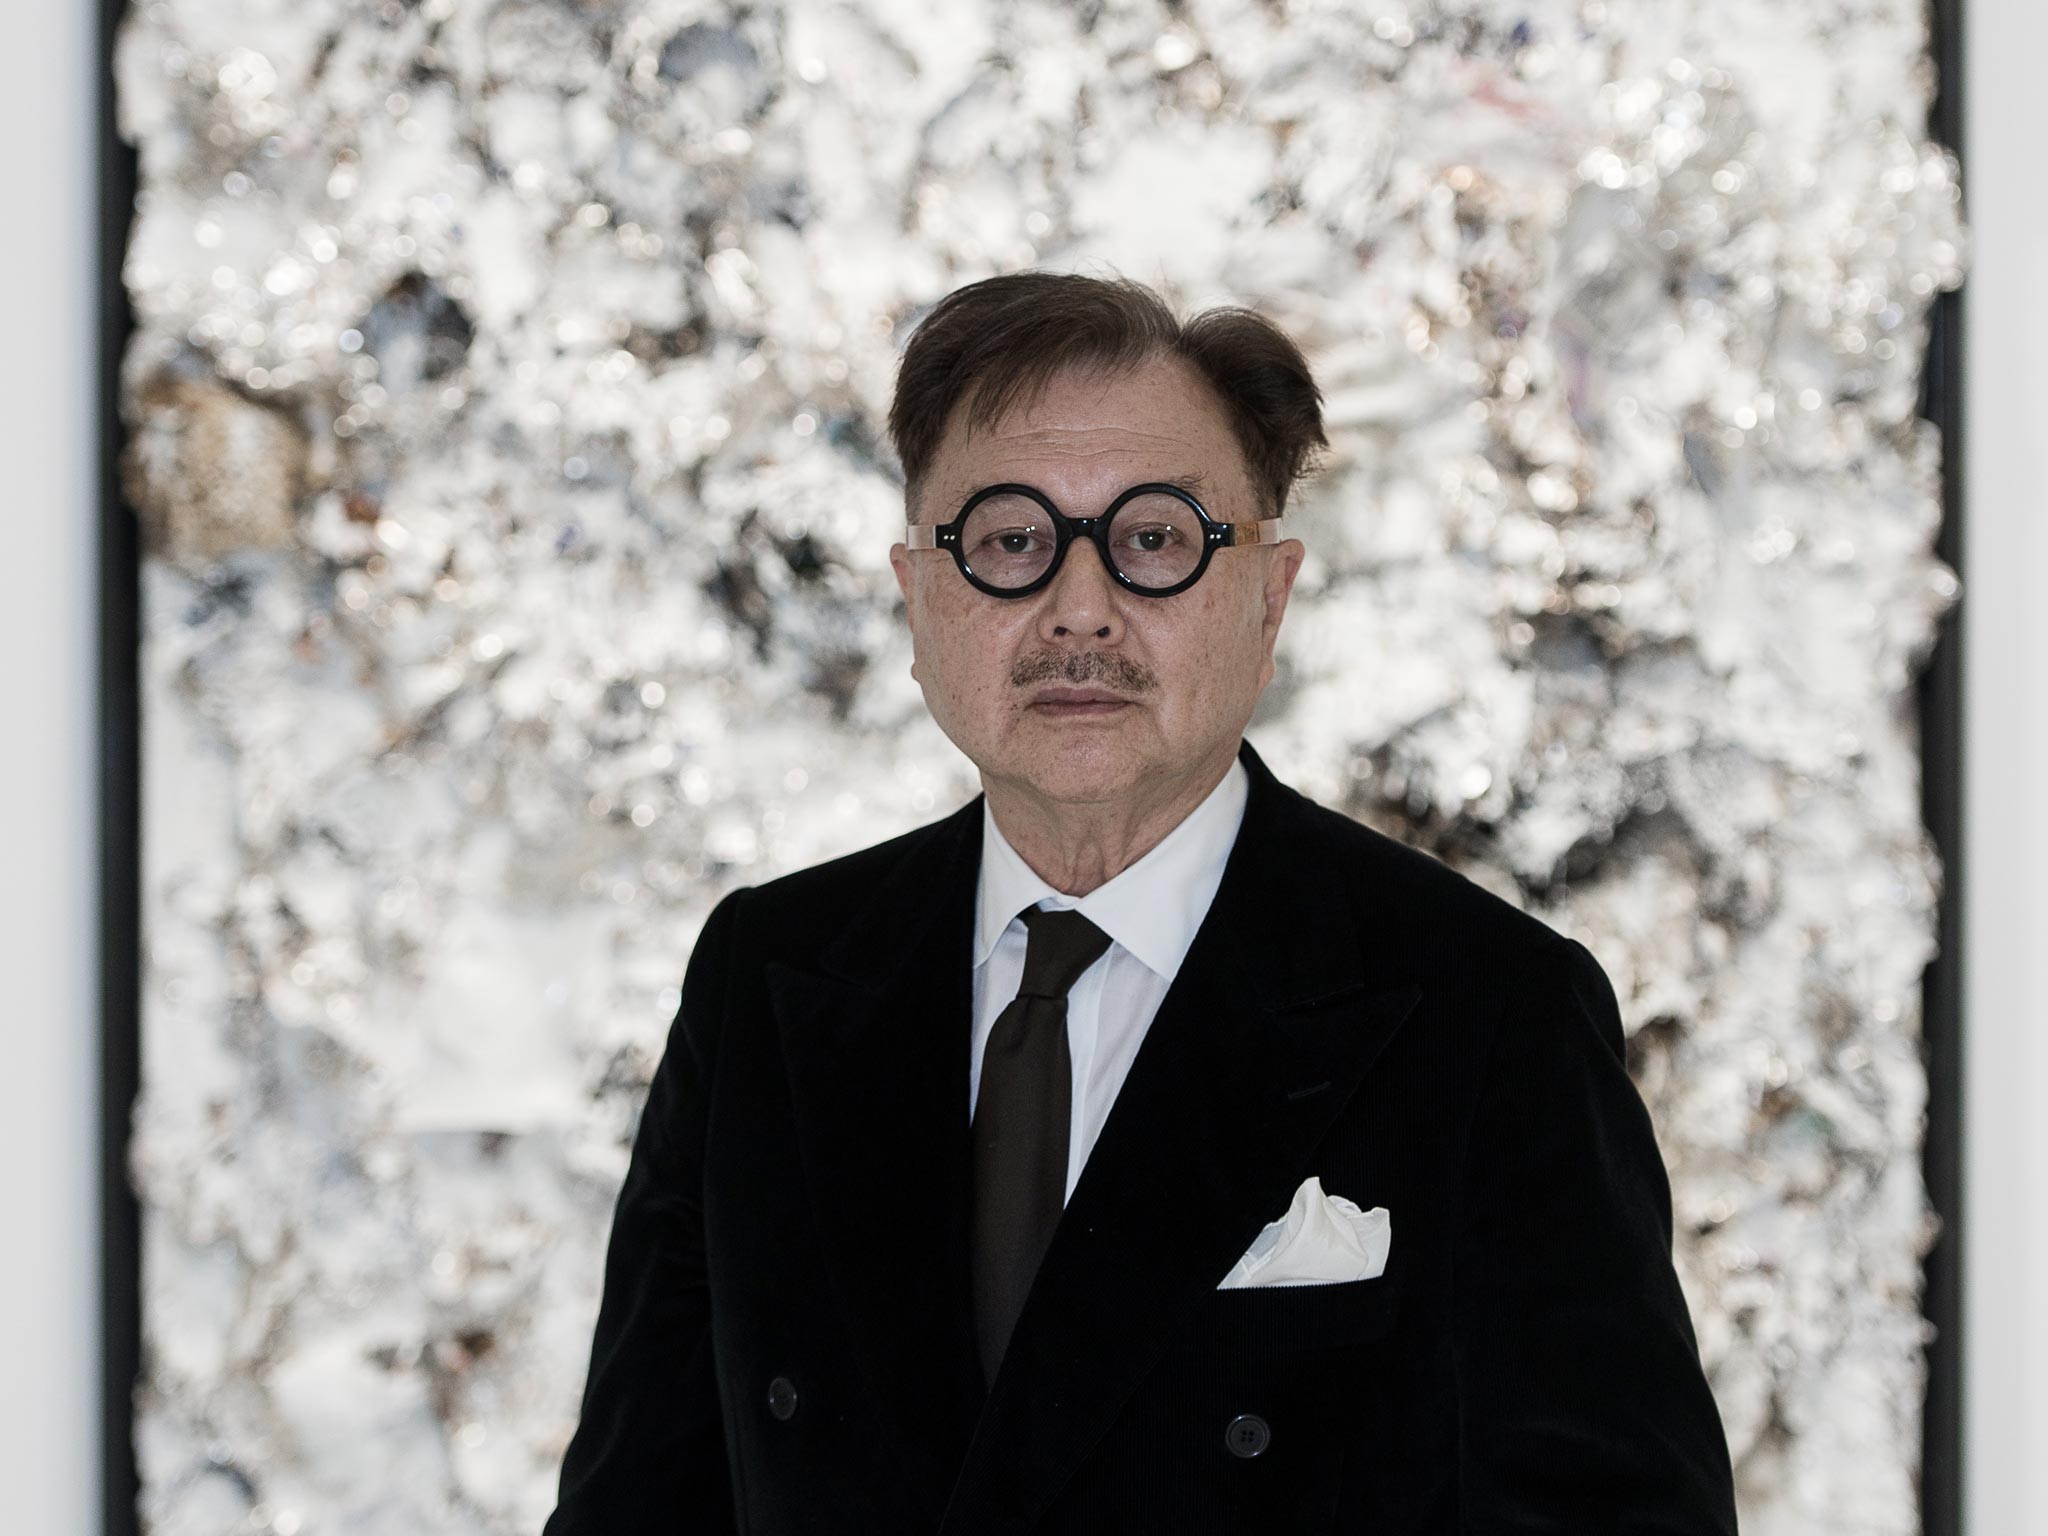 Restauranteur Mr Chow returns to art after 50 year sabbatical The